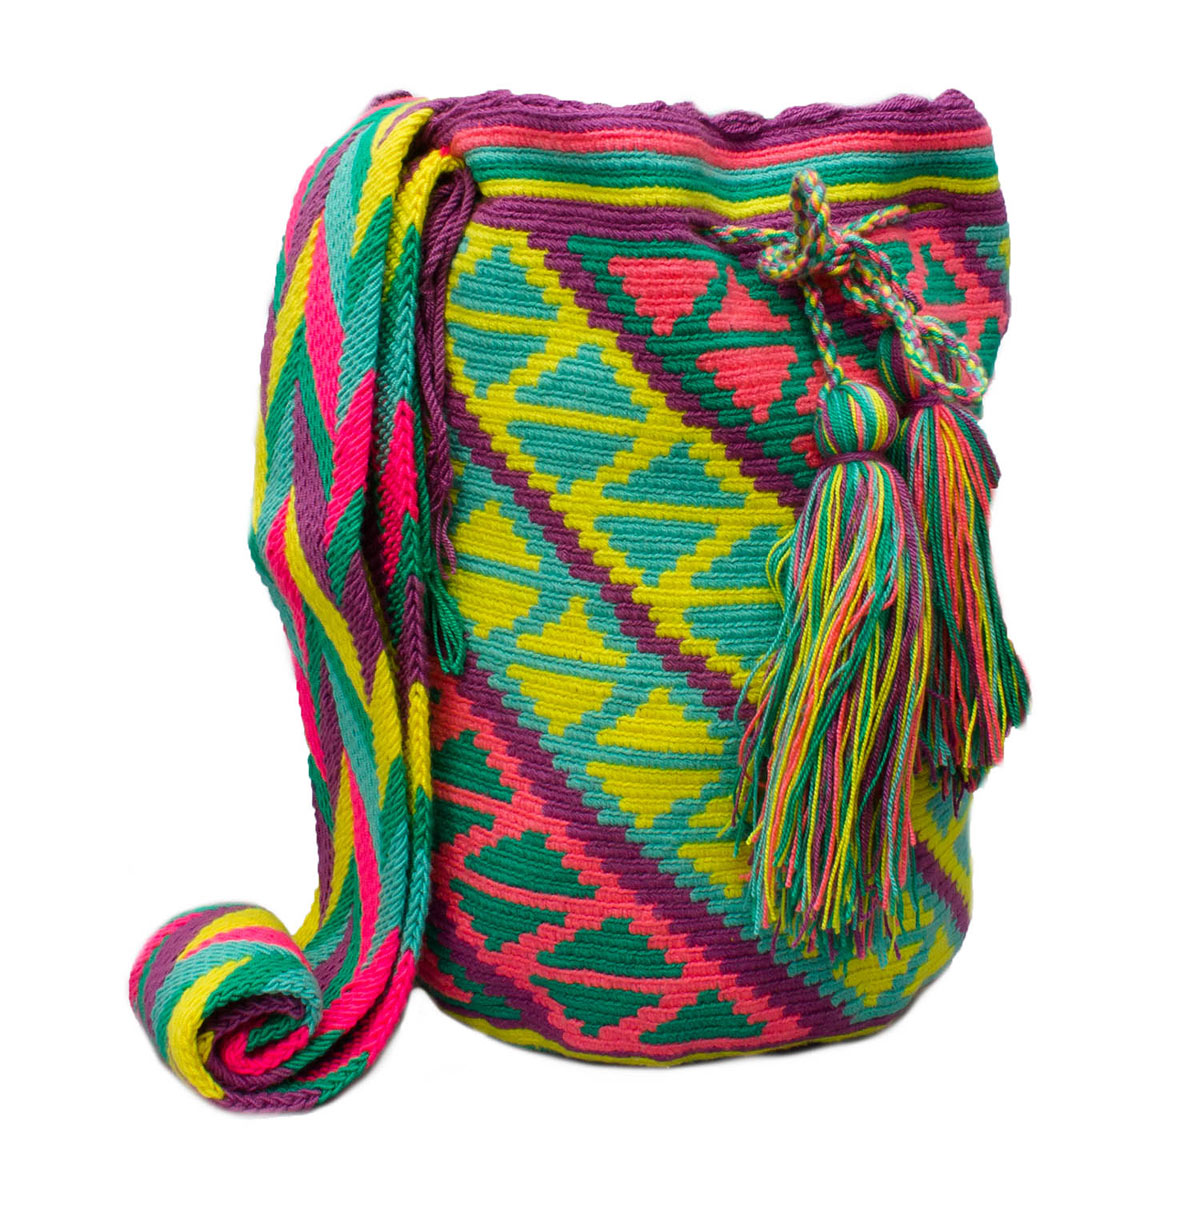 Wayuu colores pastel - Mochilas Wayuu de La colombiana Productos de Colombia.com